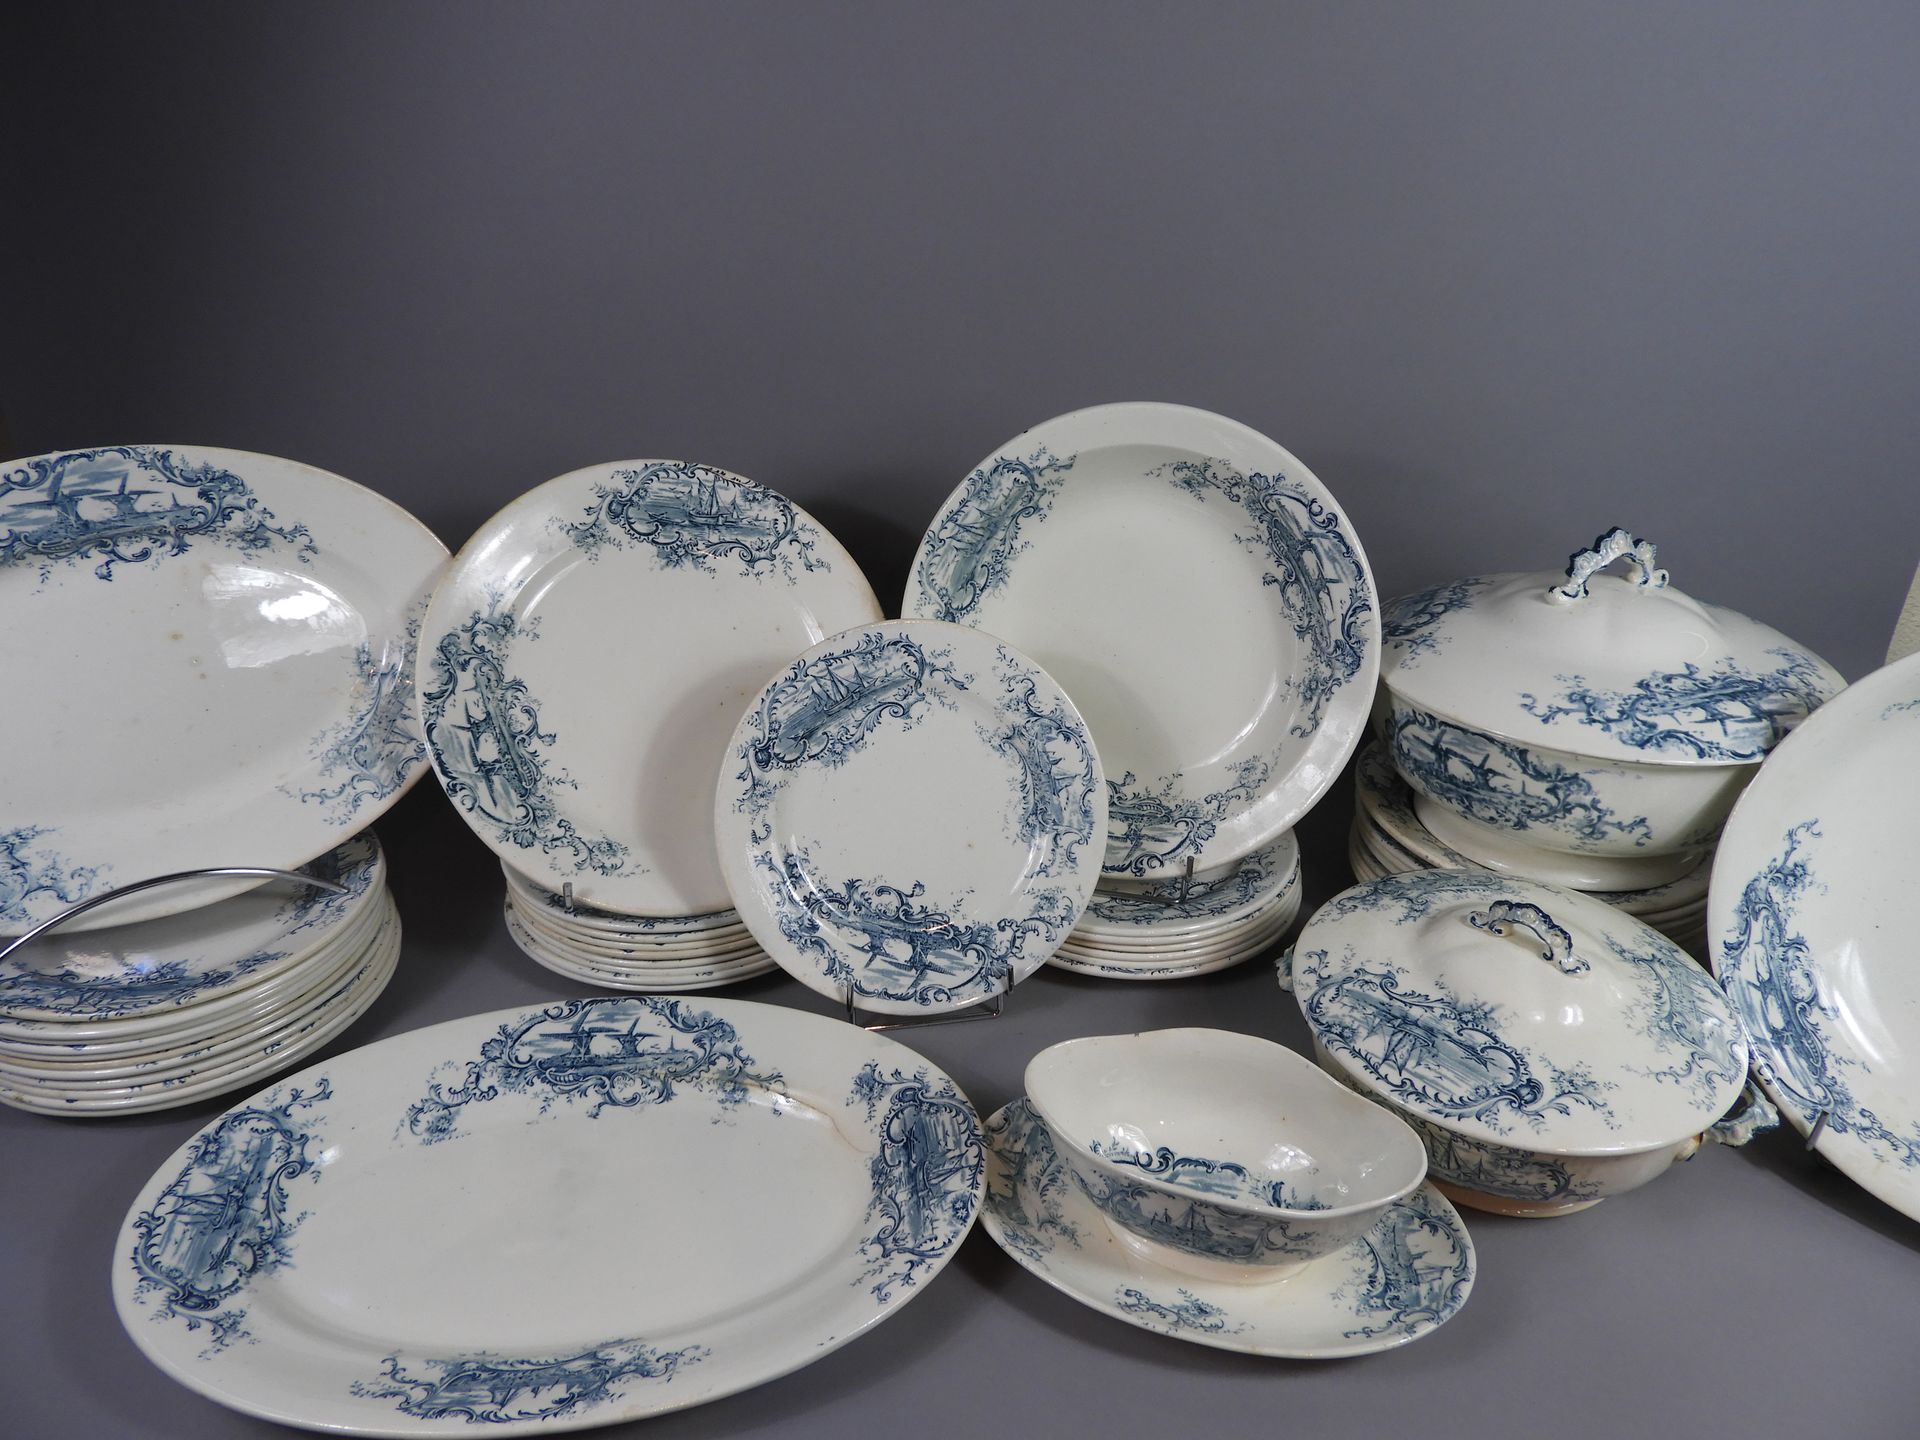 Null 波尔多陶器晚餐服务的一部分，装饰有风景 "Modèle Paysages"，包括27个餐盘，8个汤盘，一个沙拉碗（29厘米），一个深盘（29厘米），一&hellip;